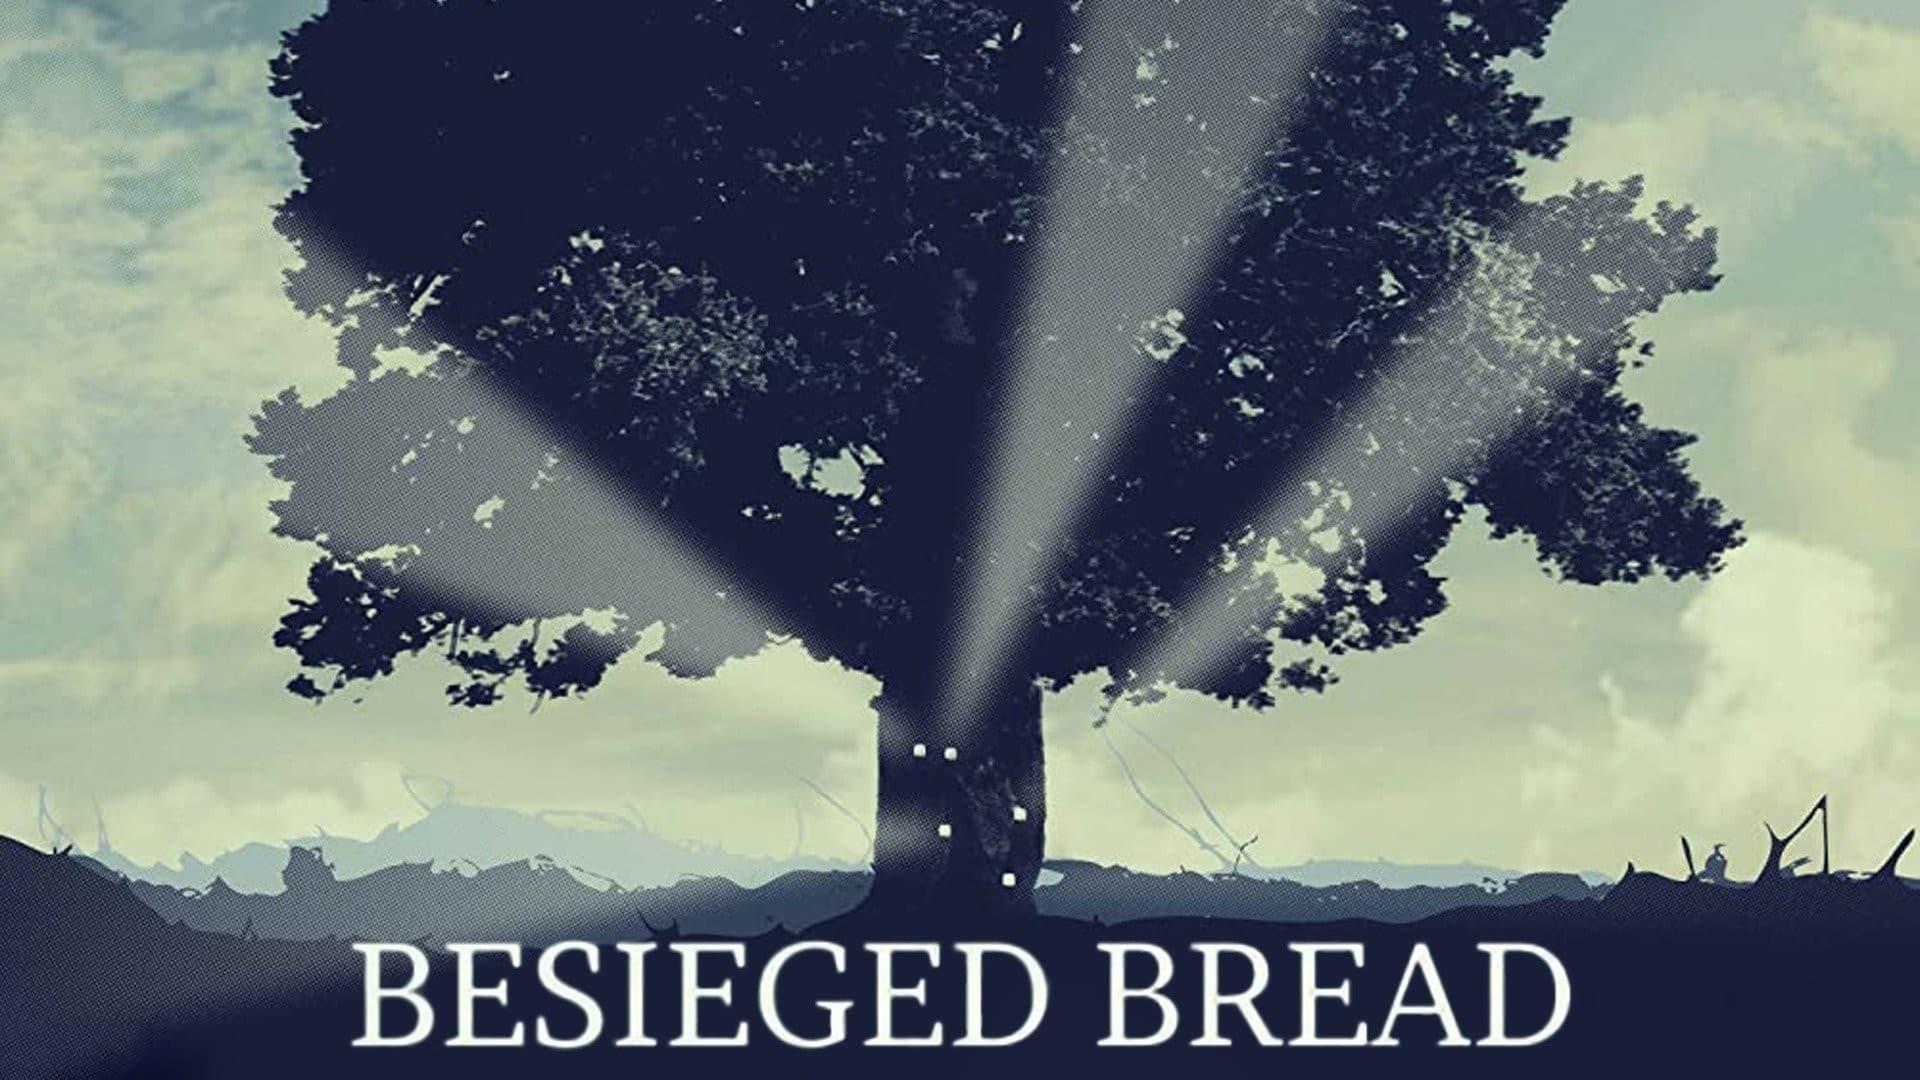 Besieged Bread backdrop